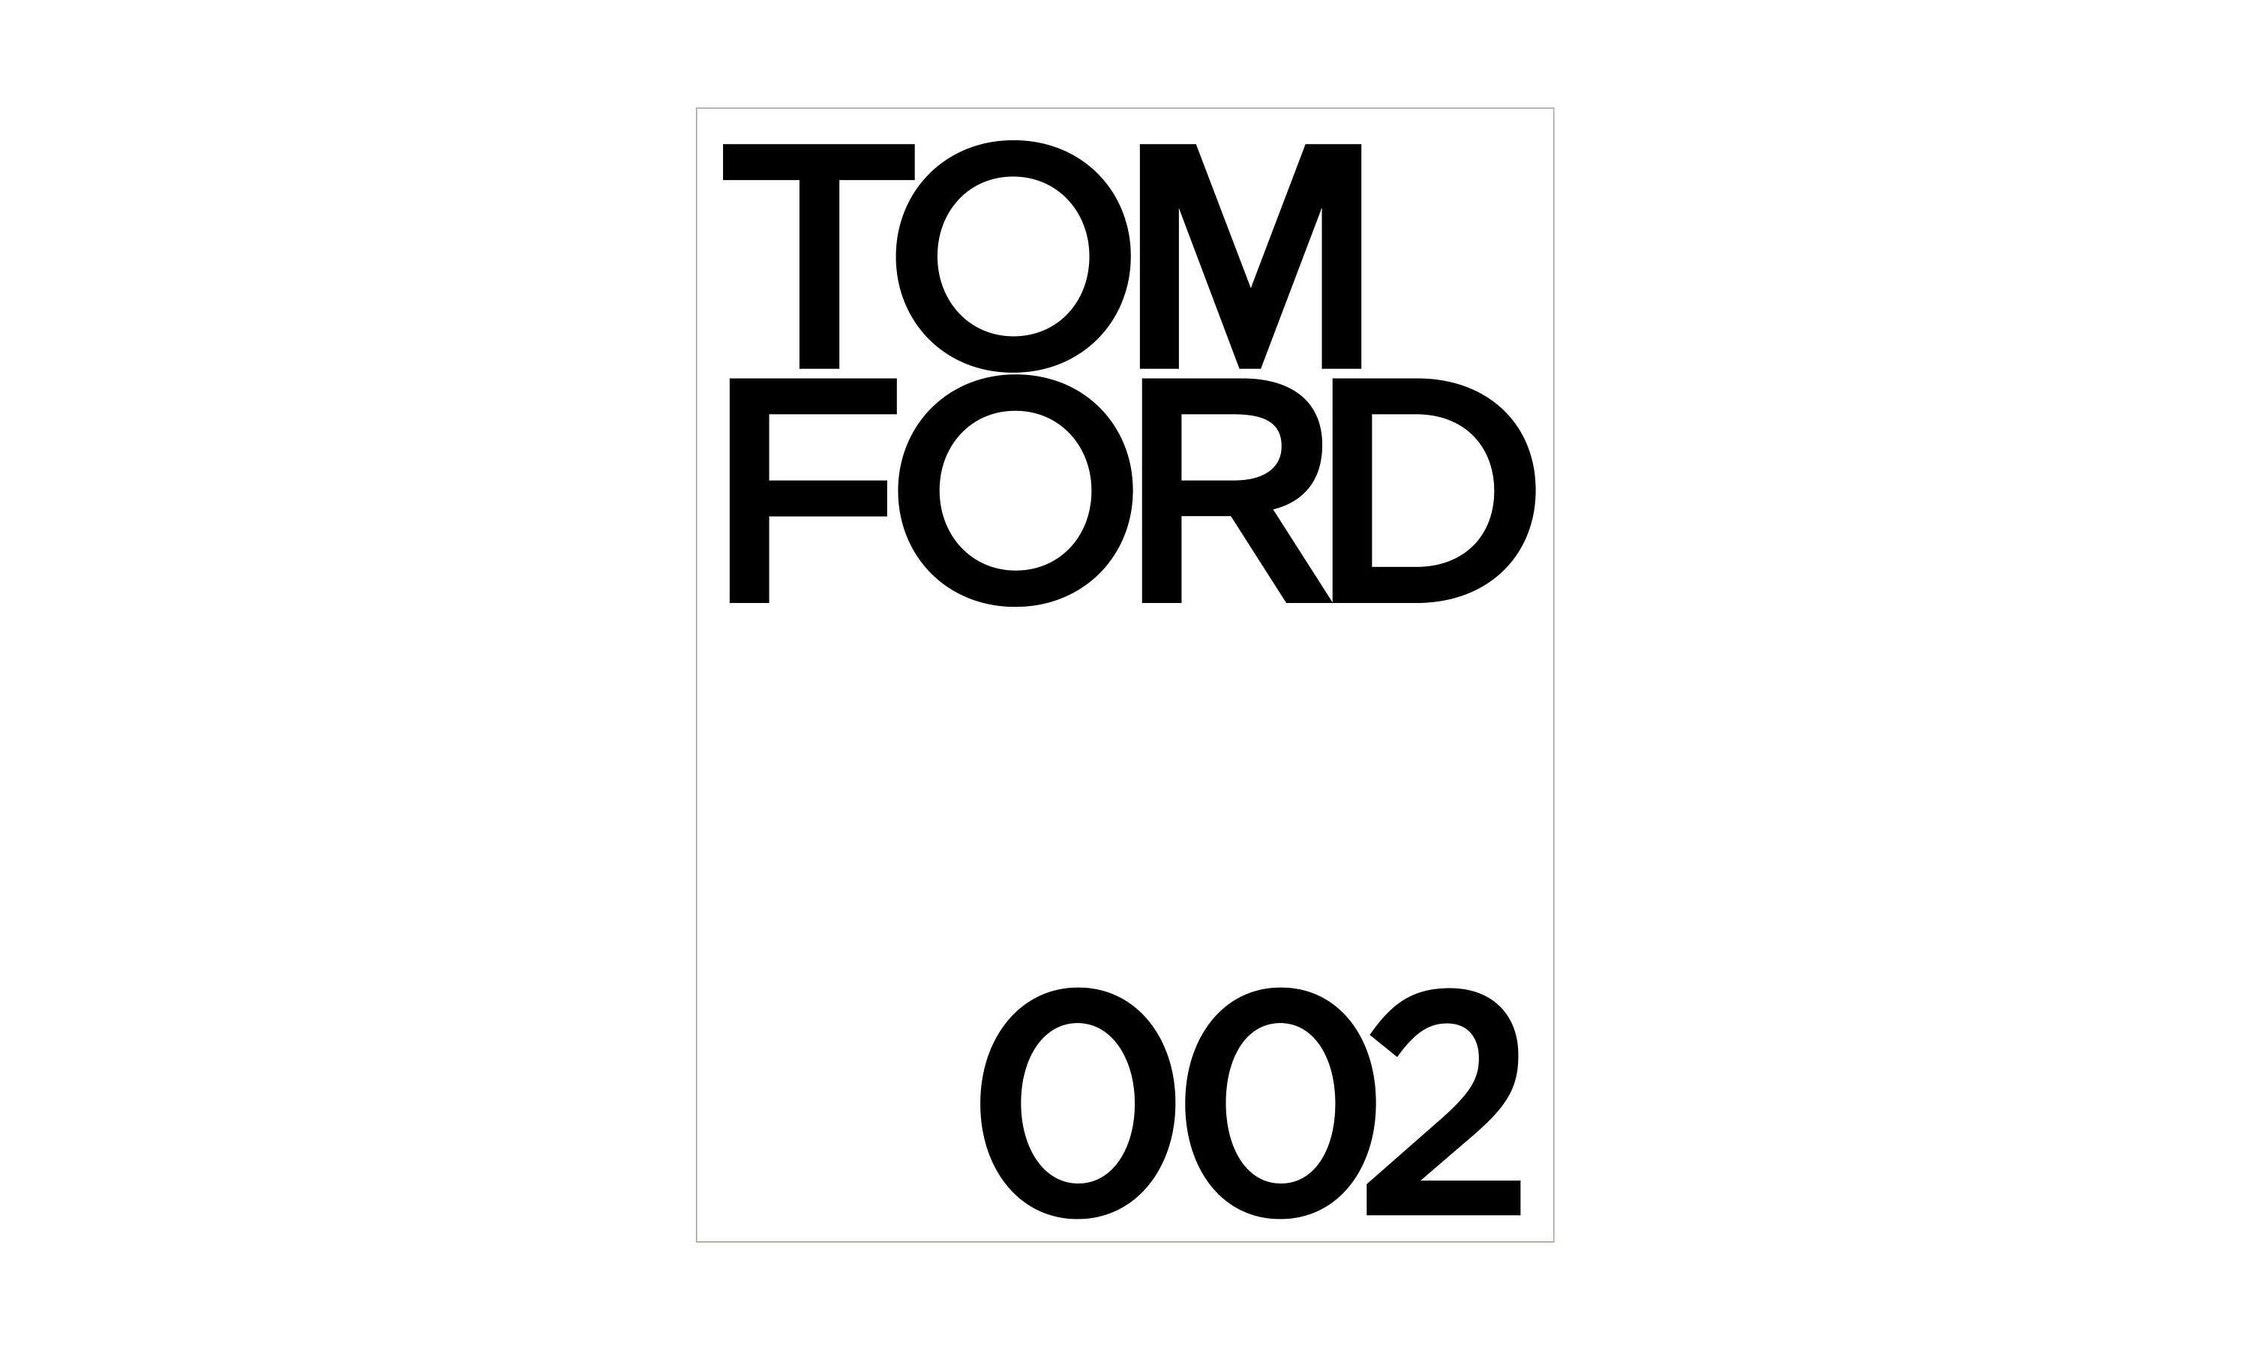 TOM FORD 推出《TOM FORD 002》精装图书，记录品牌故事